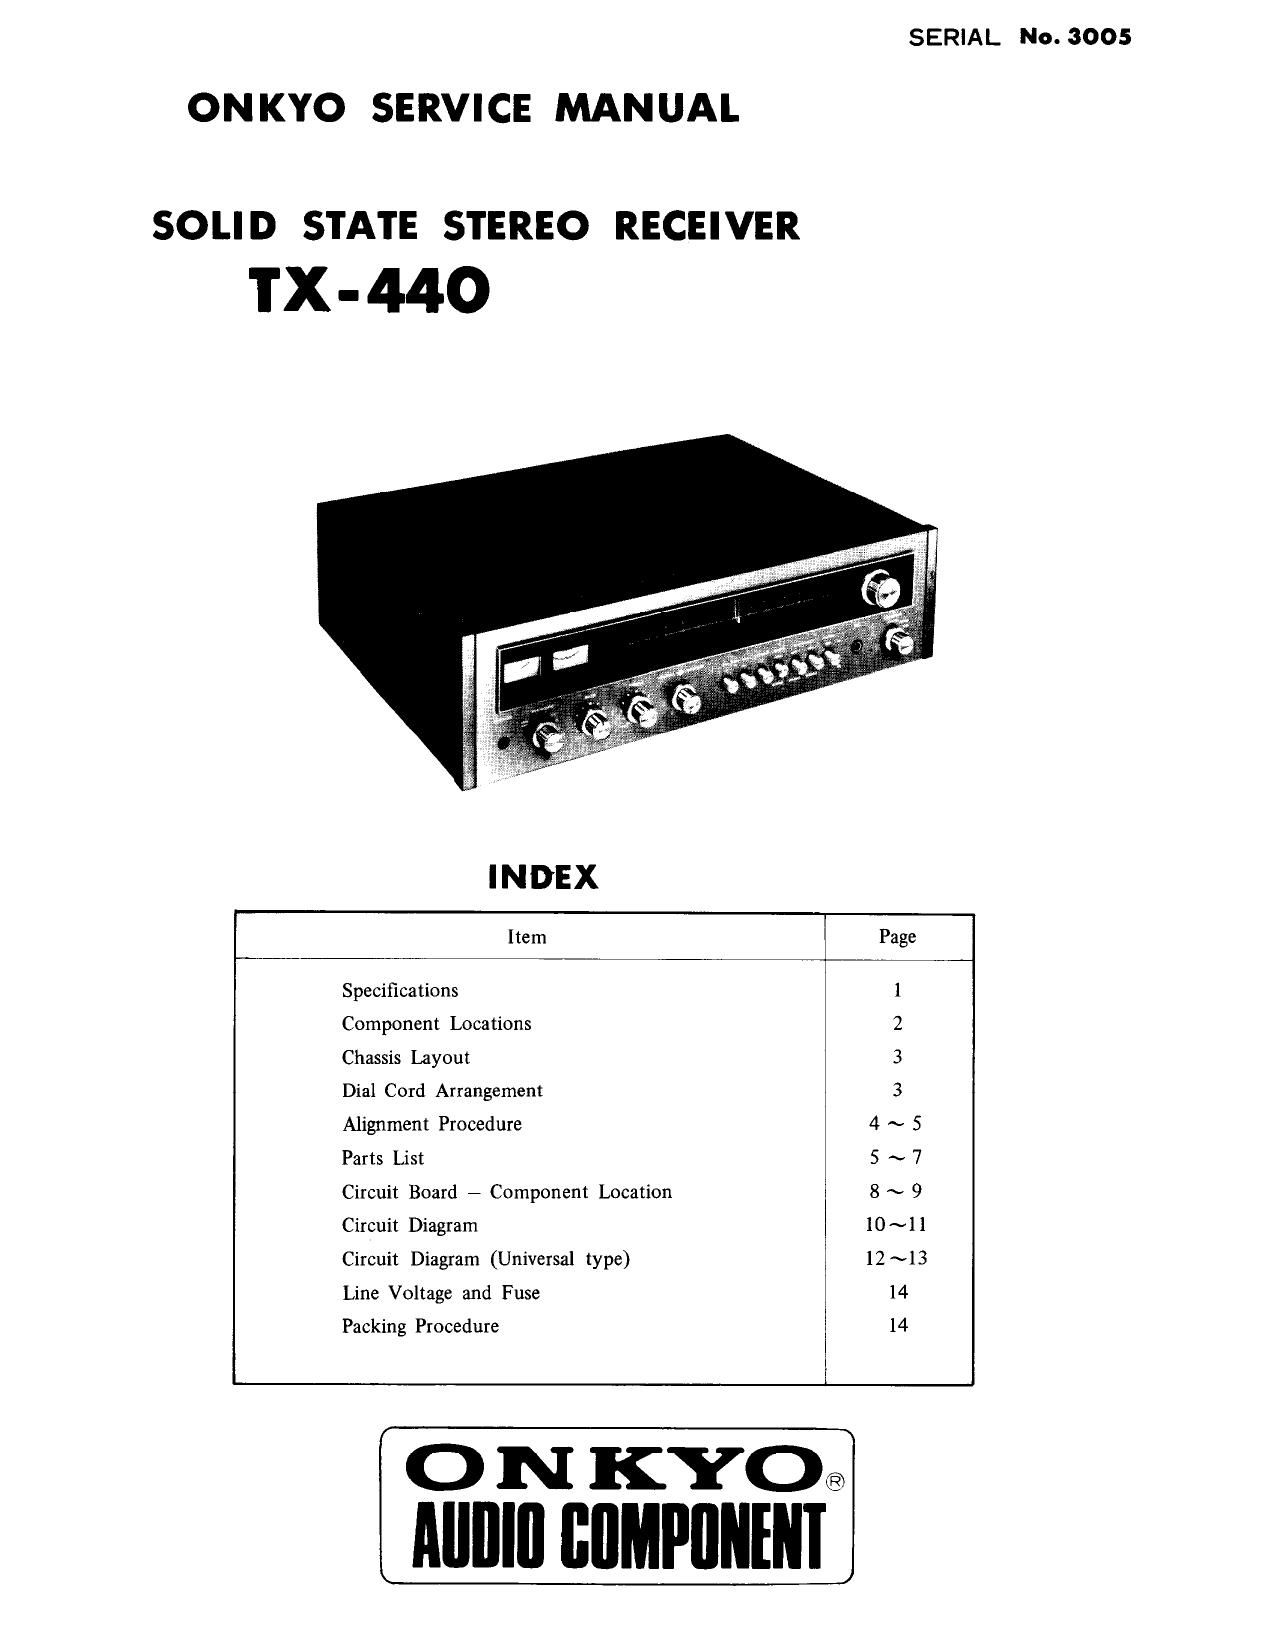 Onkyo TX 440 Service Manual